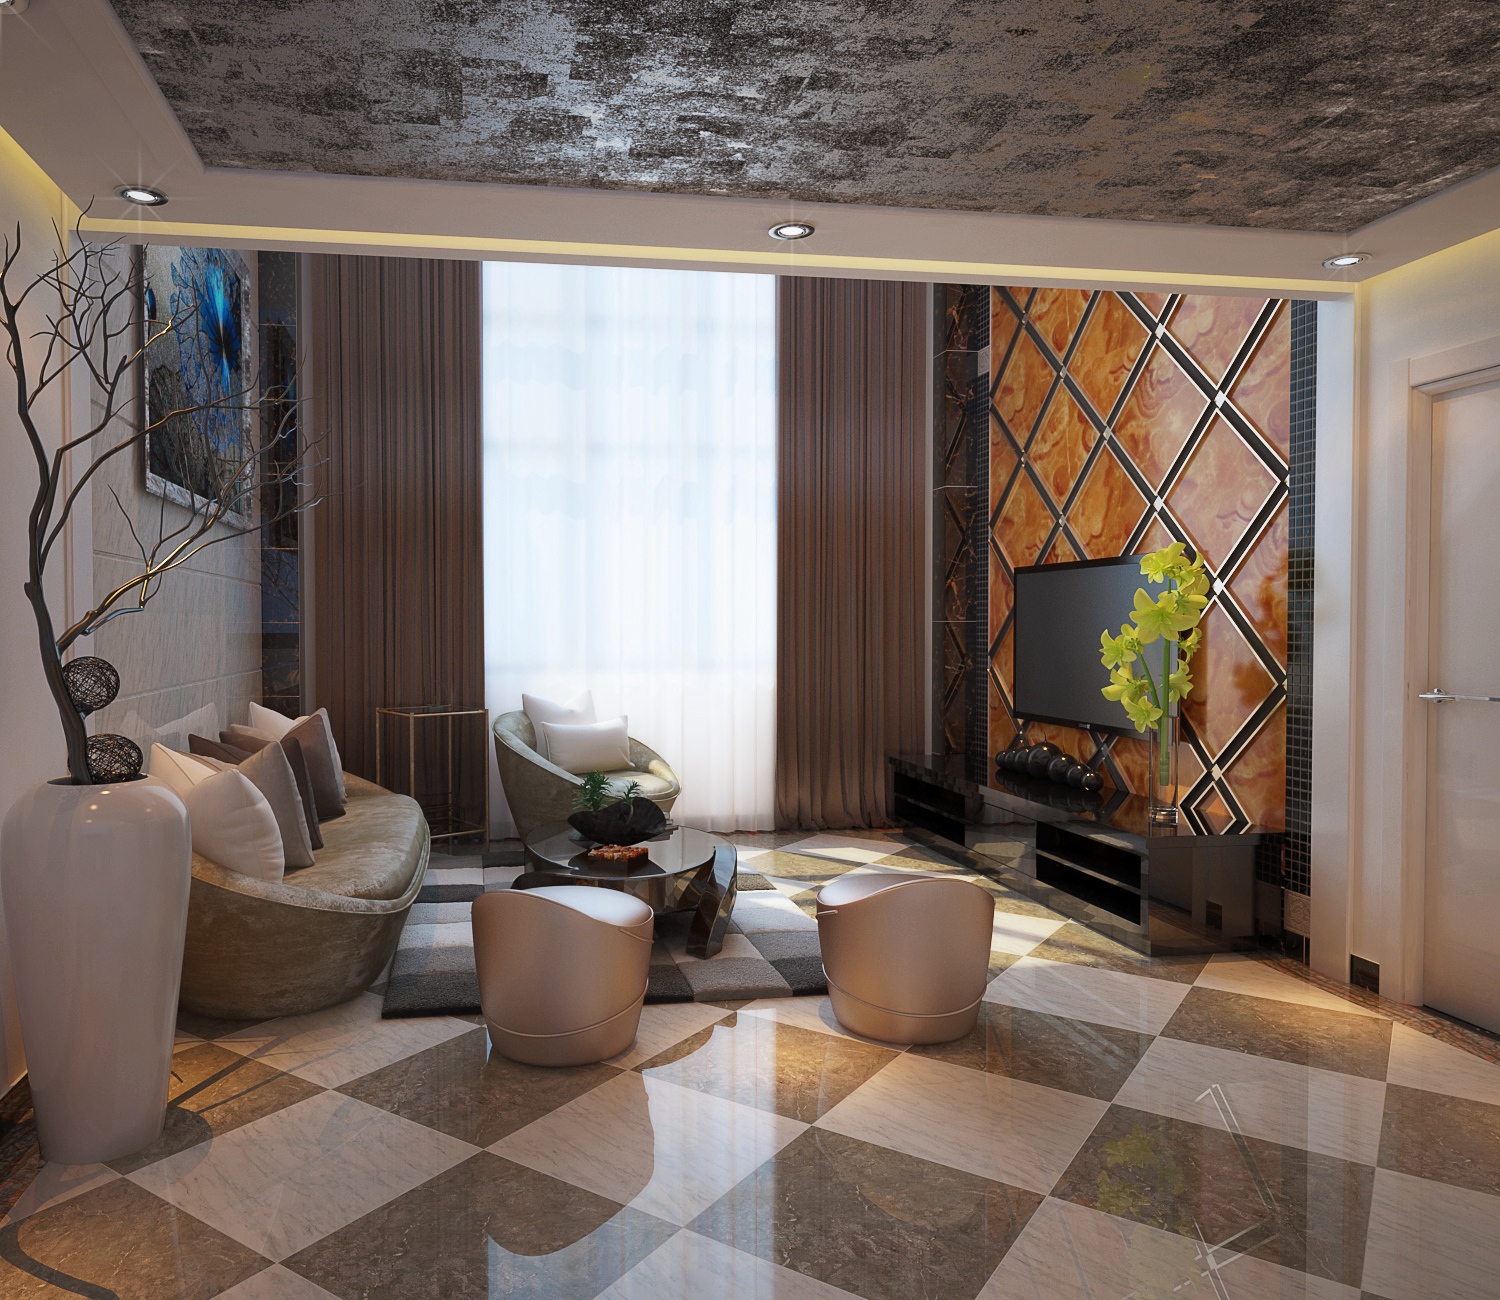 复式 跃层 白领 高富帅 客厅图片来自北京合建装饰在舒适的复式大宅的分享